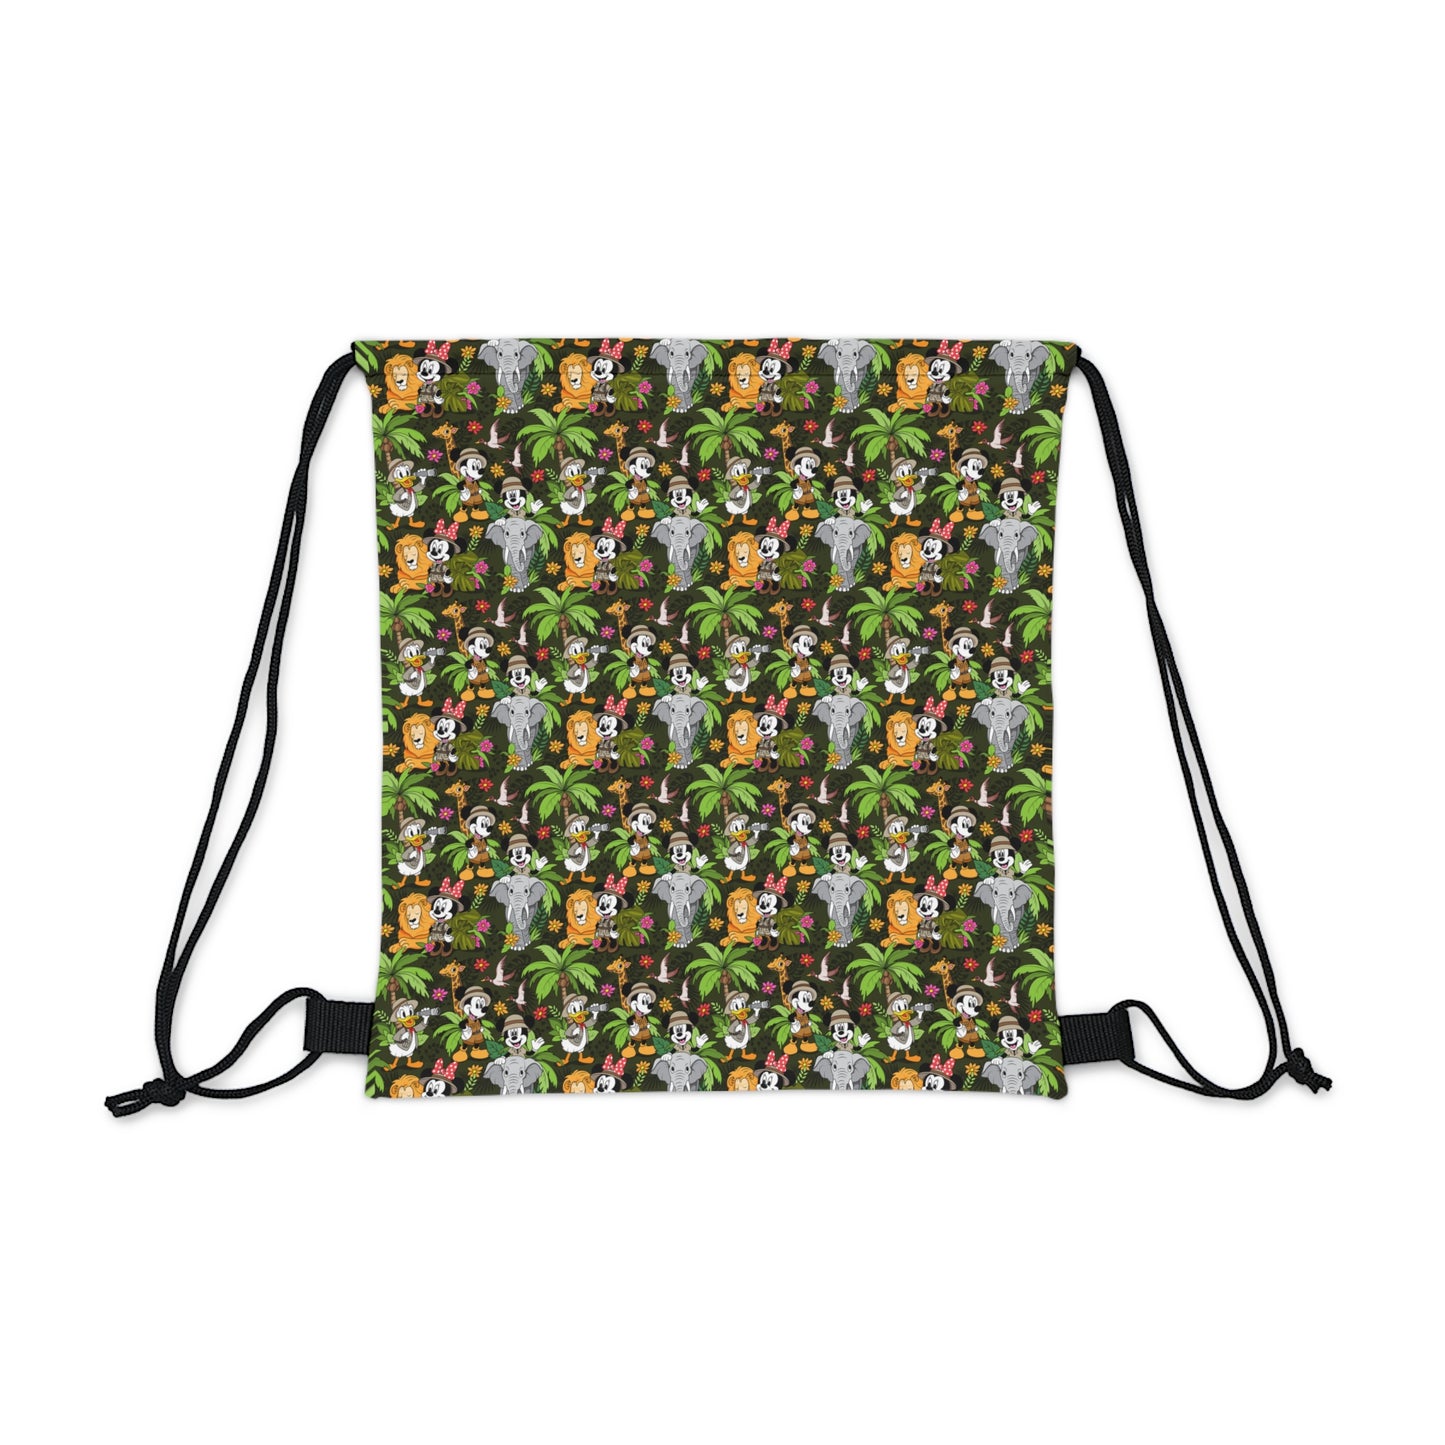 Safari Drawstring Bag